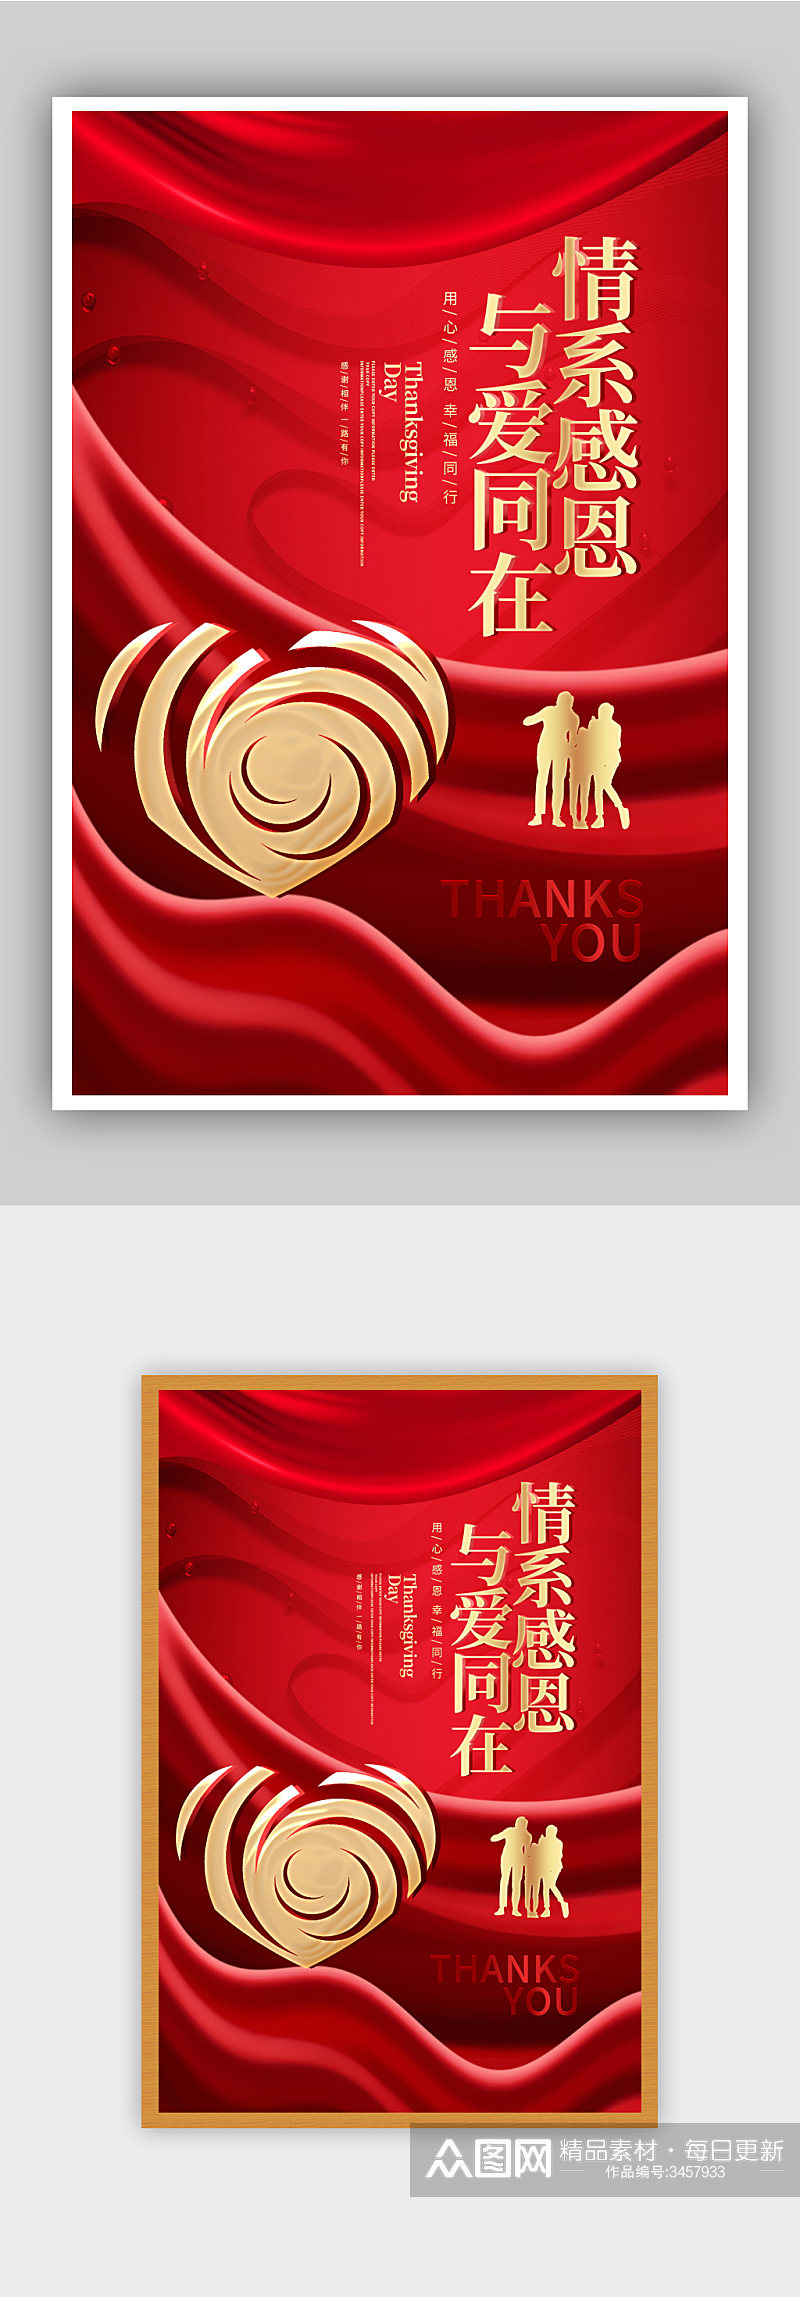 红色温馨感恩节宣传海报素材